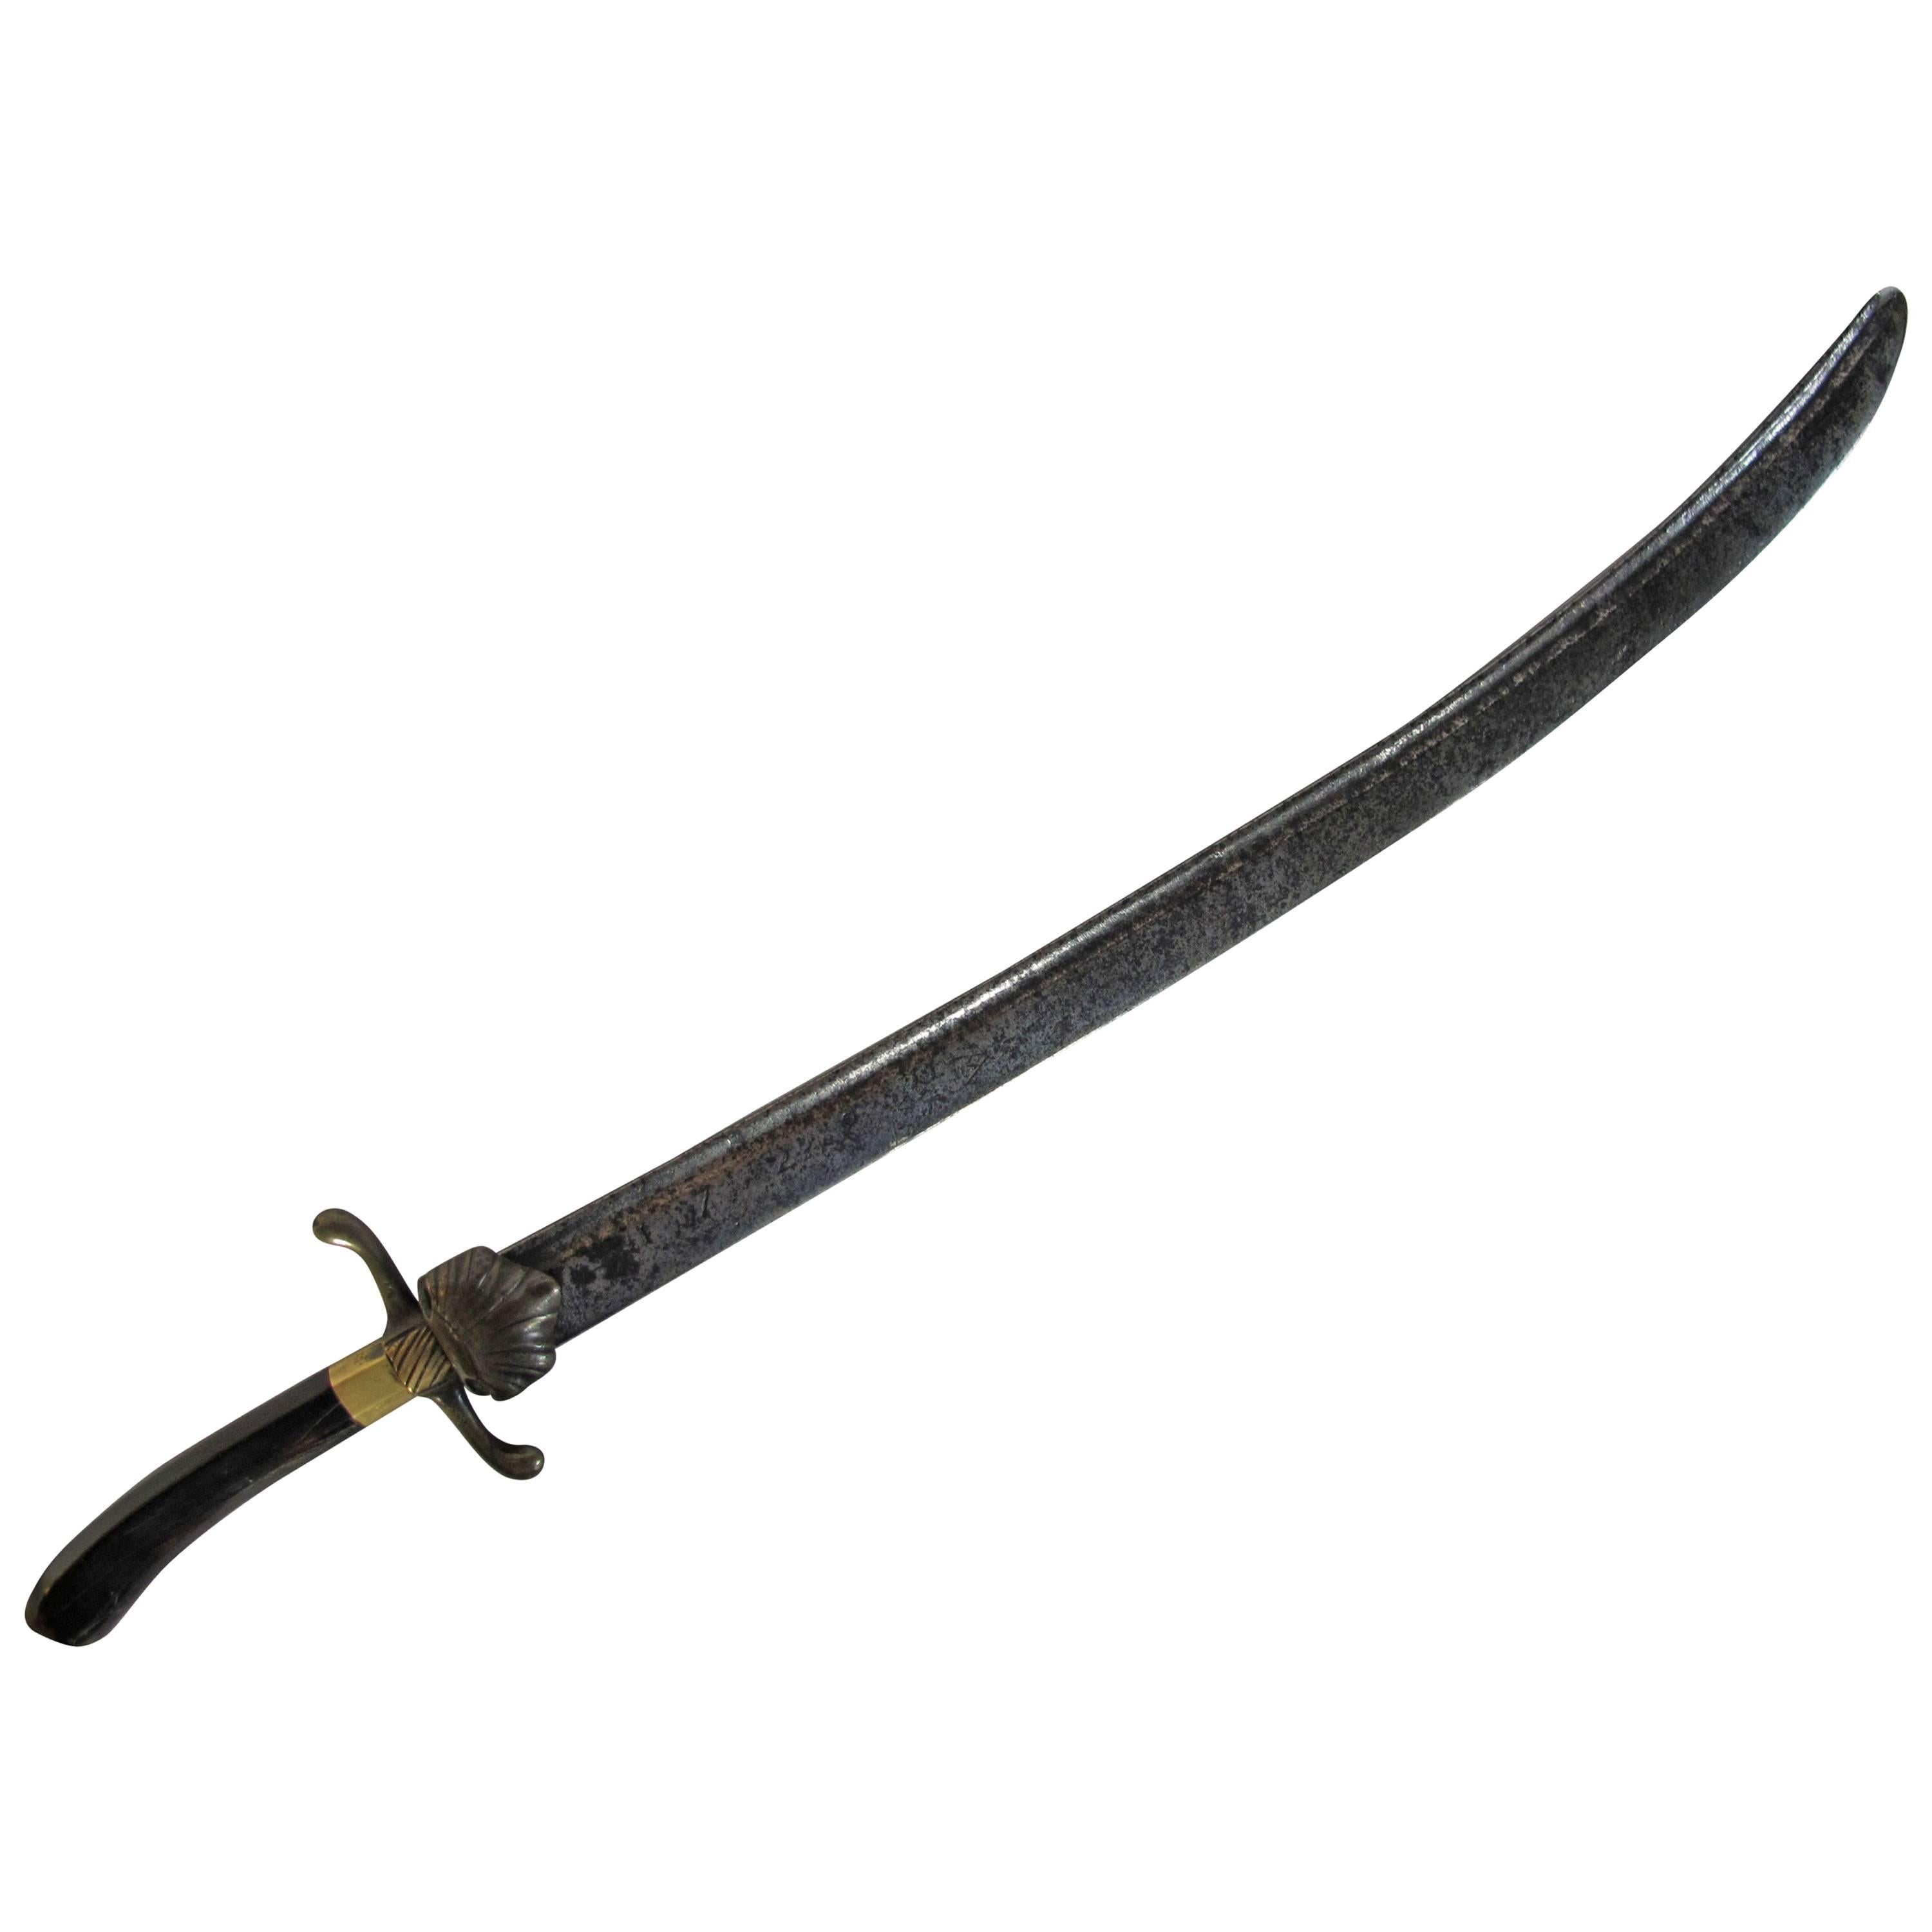 Dutch VOC Sword or Saber, Dated 1728